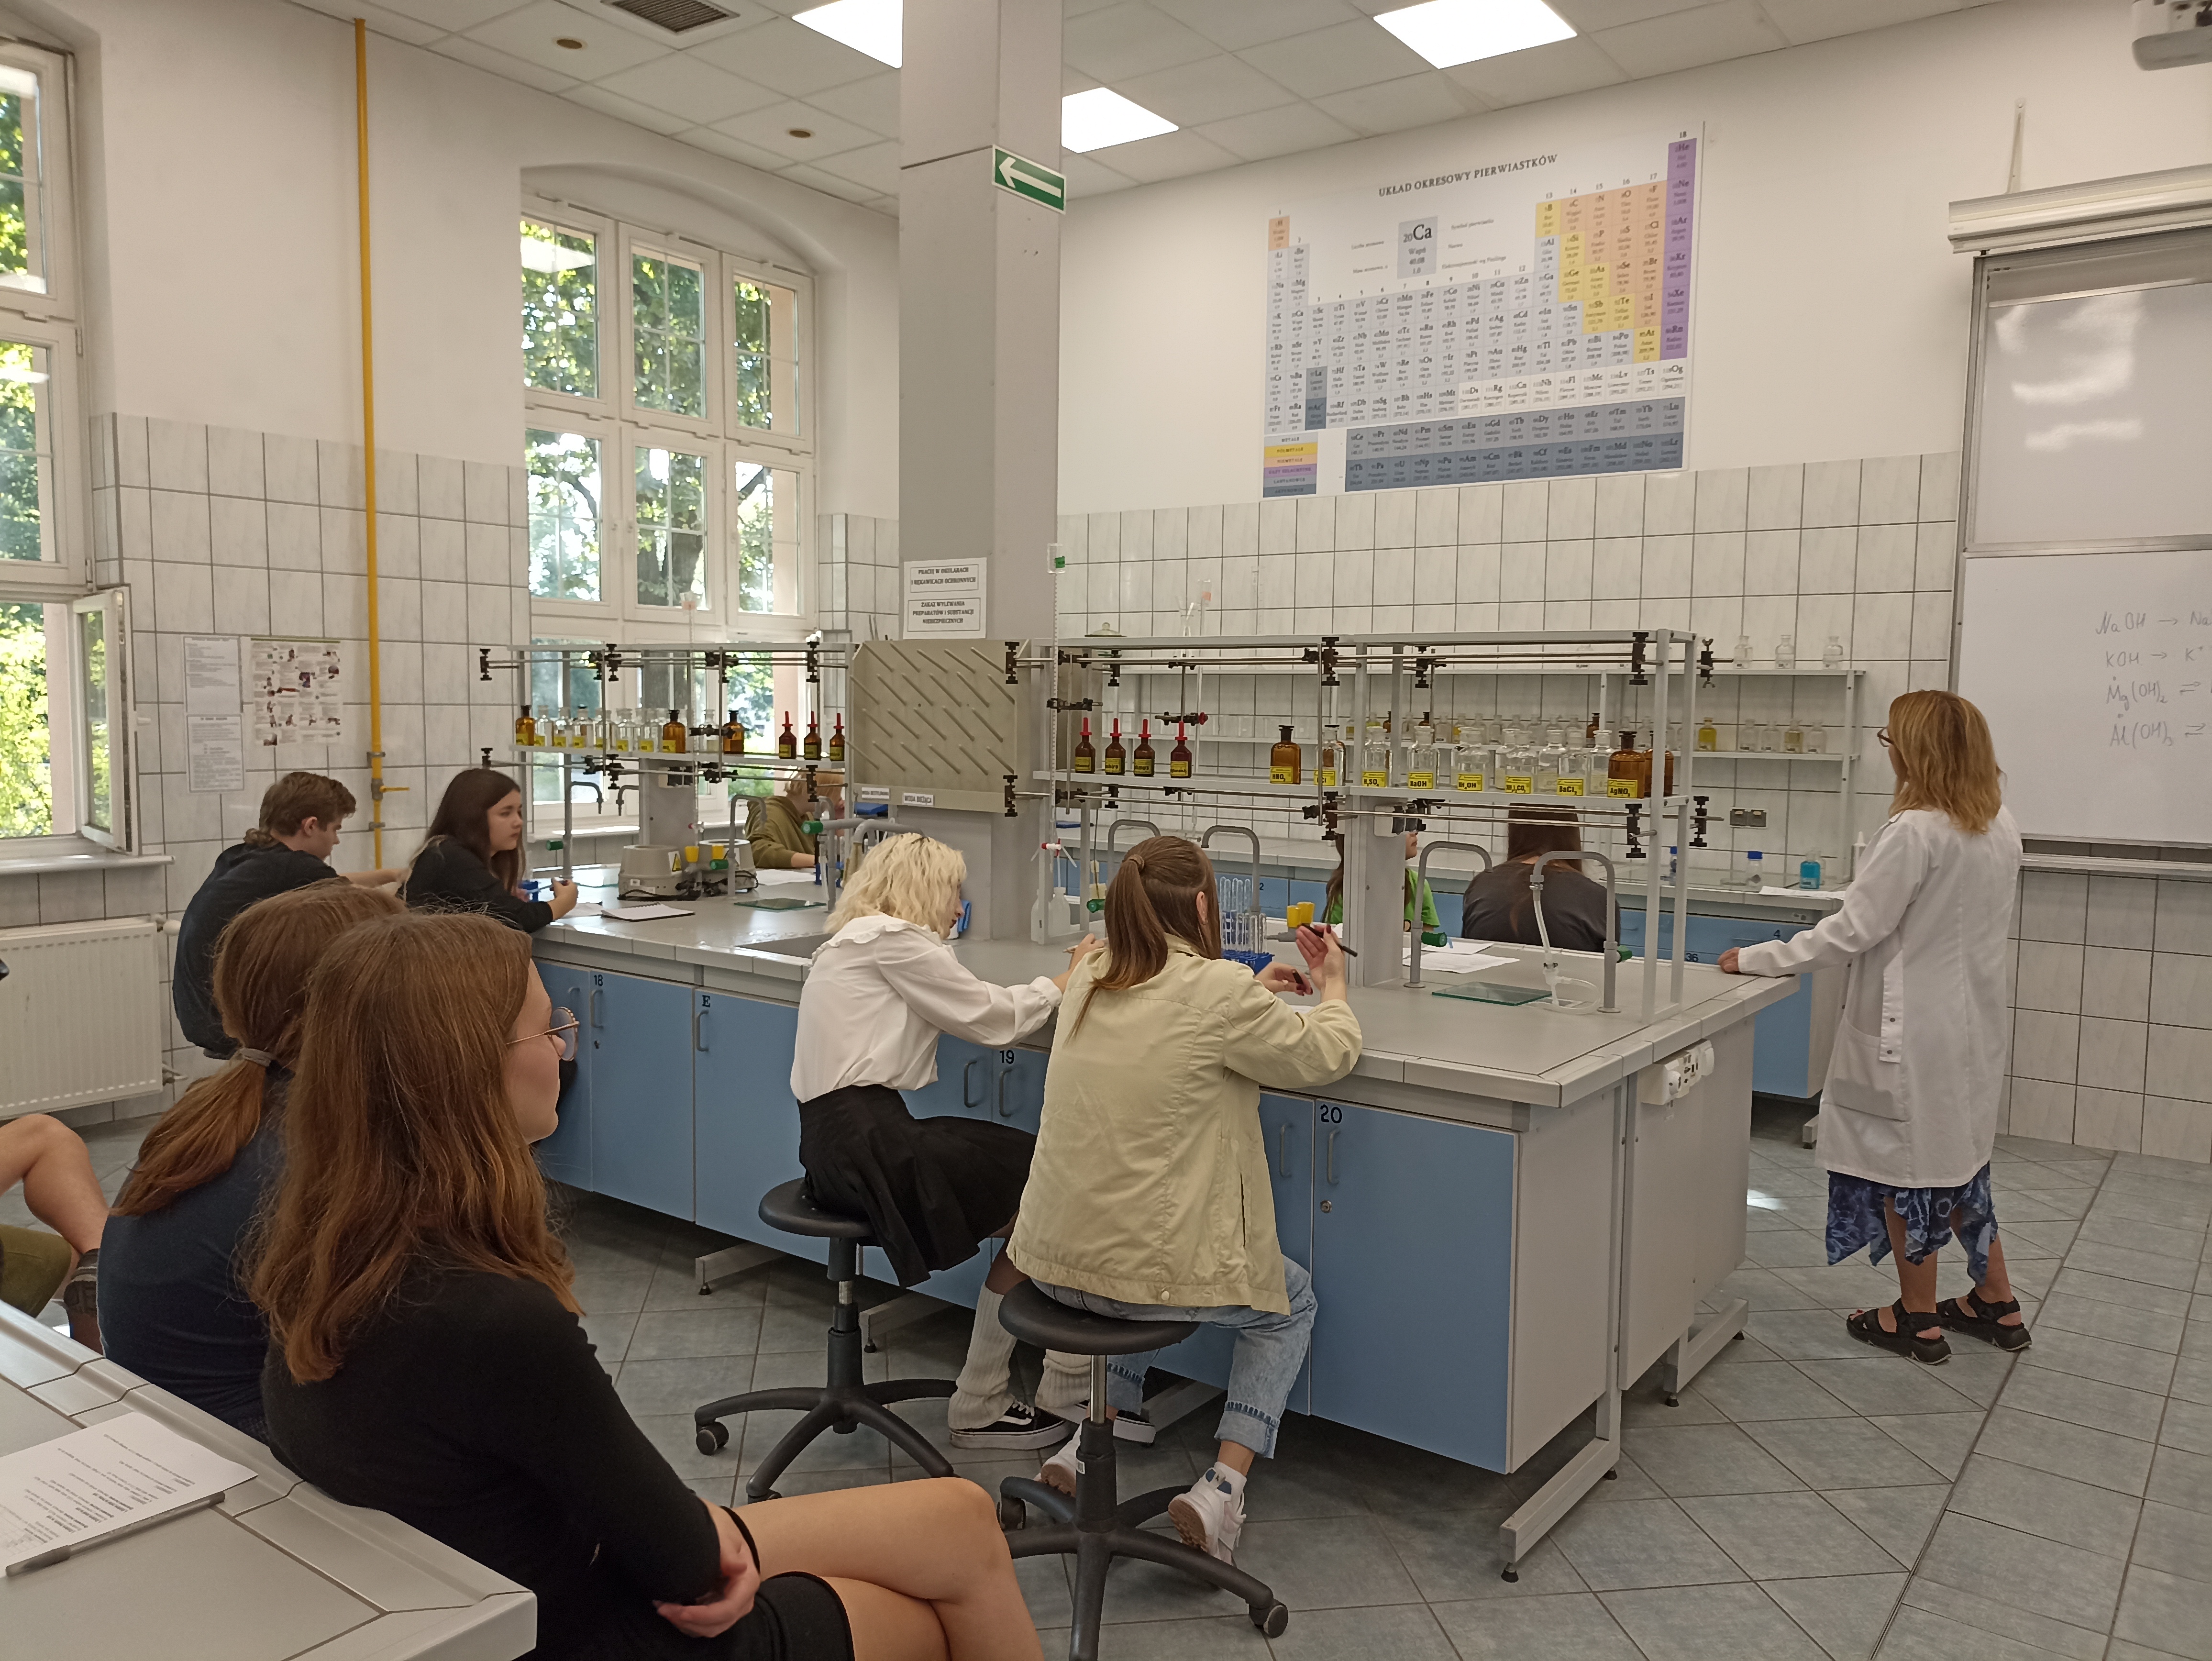 Uczniowie siedzą w grupach dwuosobowych przy stołach laboratoryjnych. Wszyscy wraz z nauczycielem Uniwersytetu Przyrodniczego wpatrują się w układ okresowy pierwiastków chemicznych.